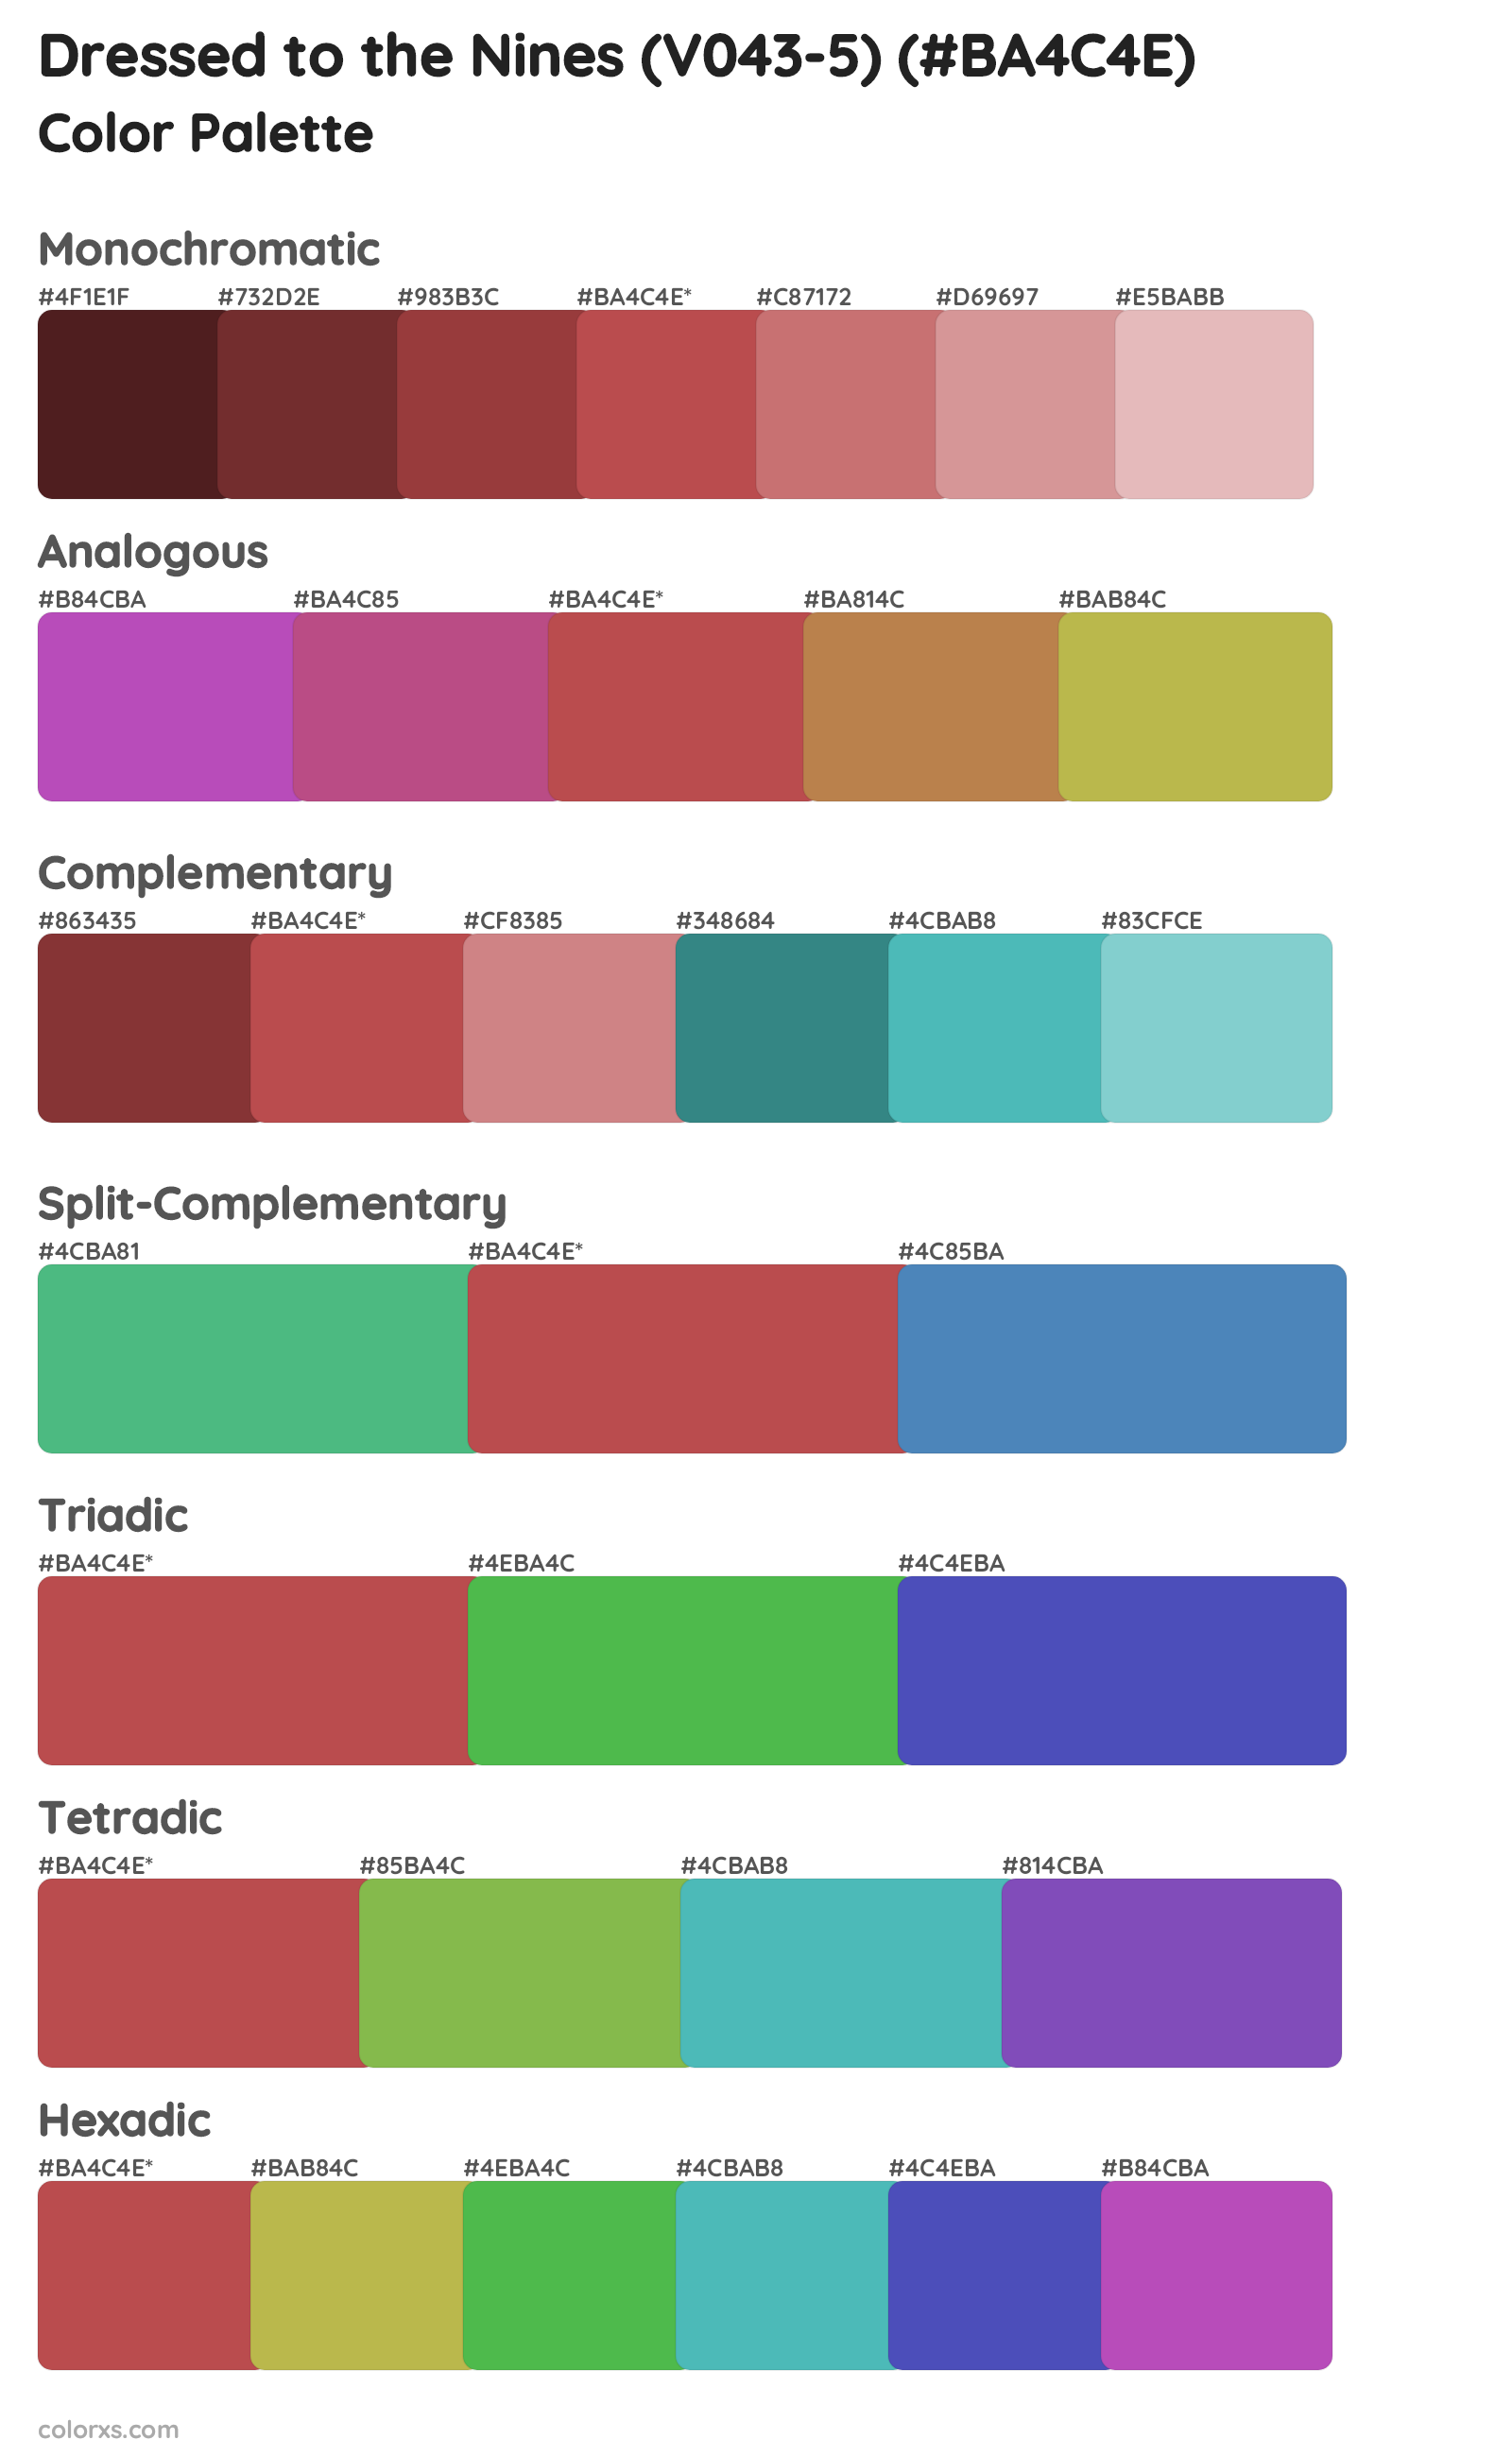 Dressed to the Nines (V043-5) Color Scheme Palettes